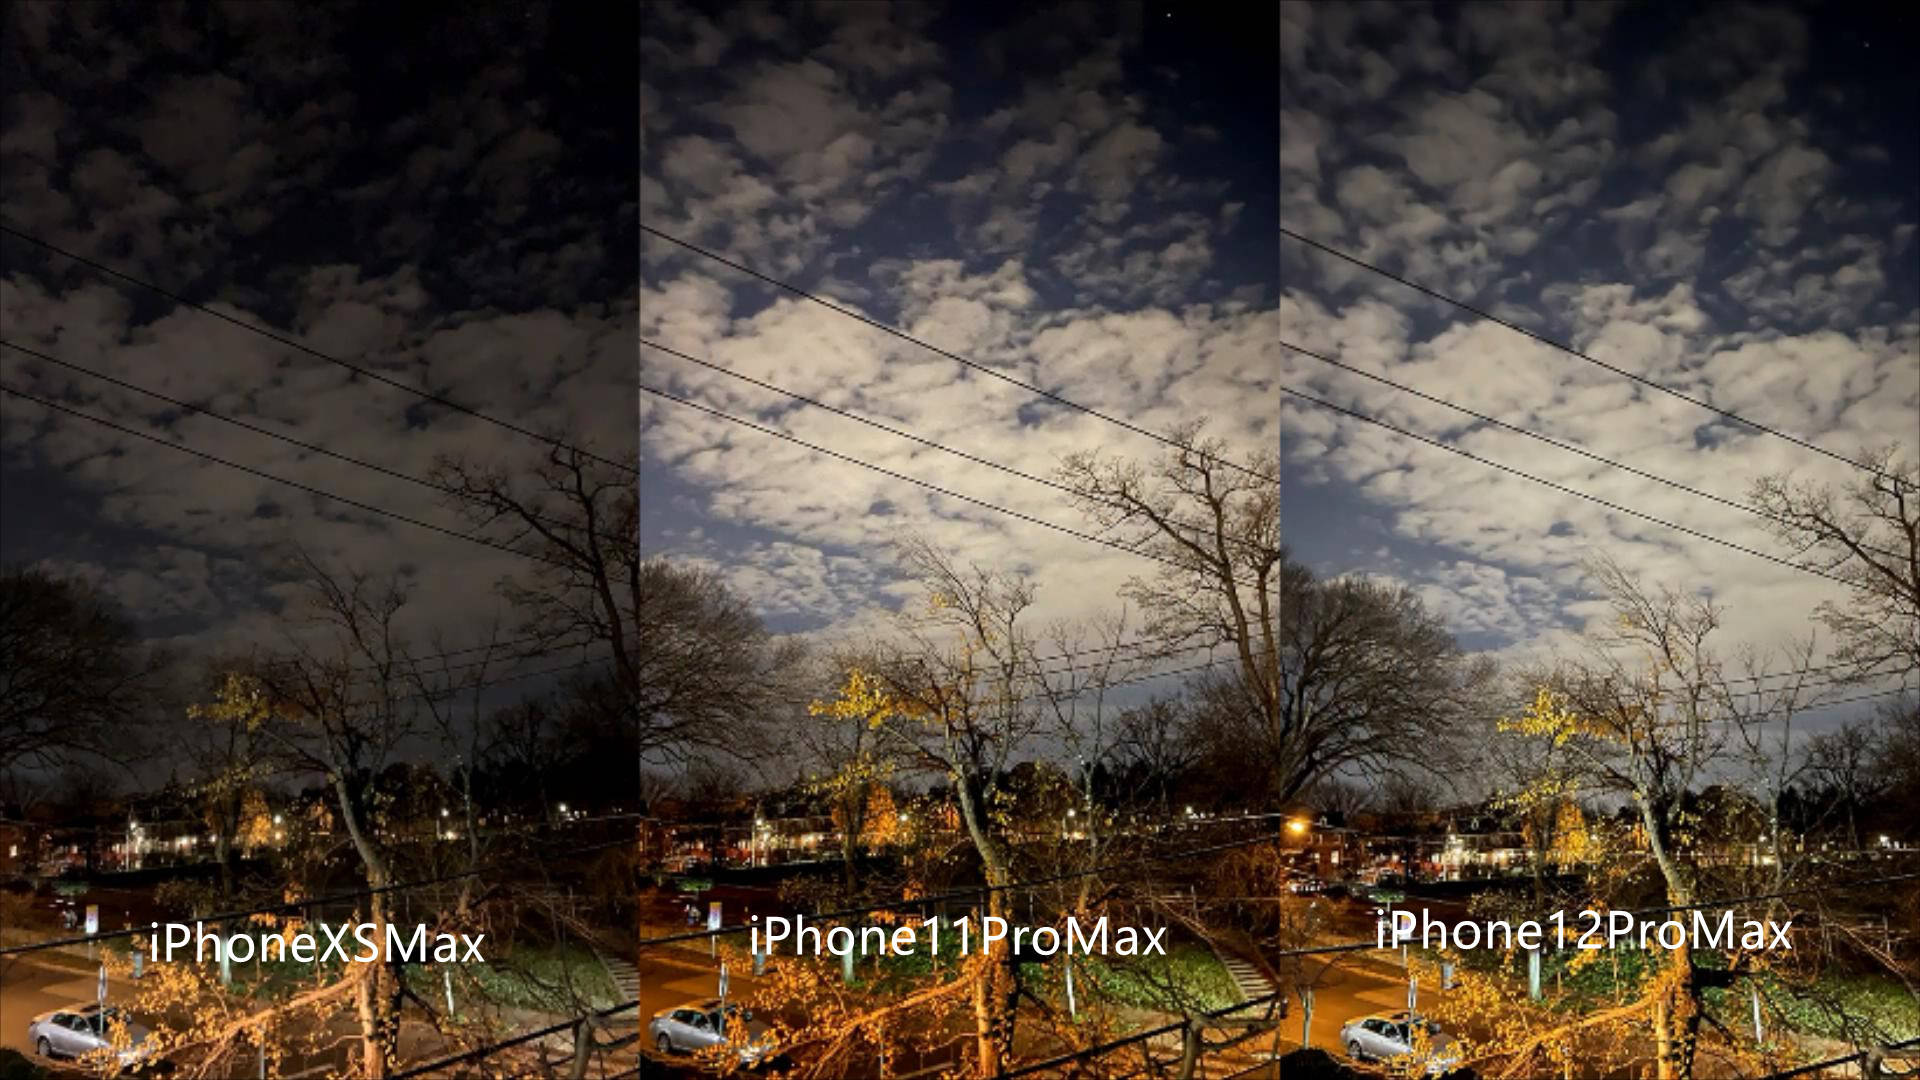 原创iphone12promax/11promax/xsmax拍照对比:都是机皇差距有多大